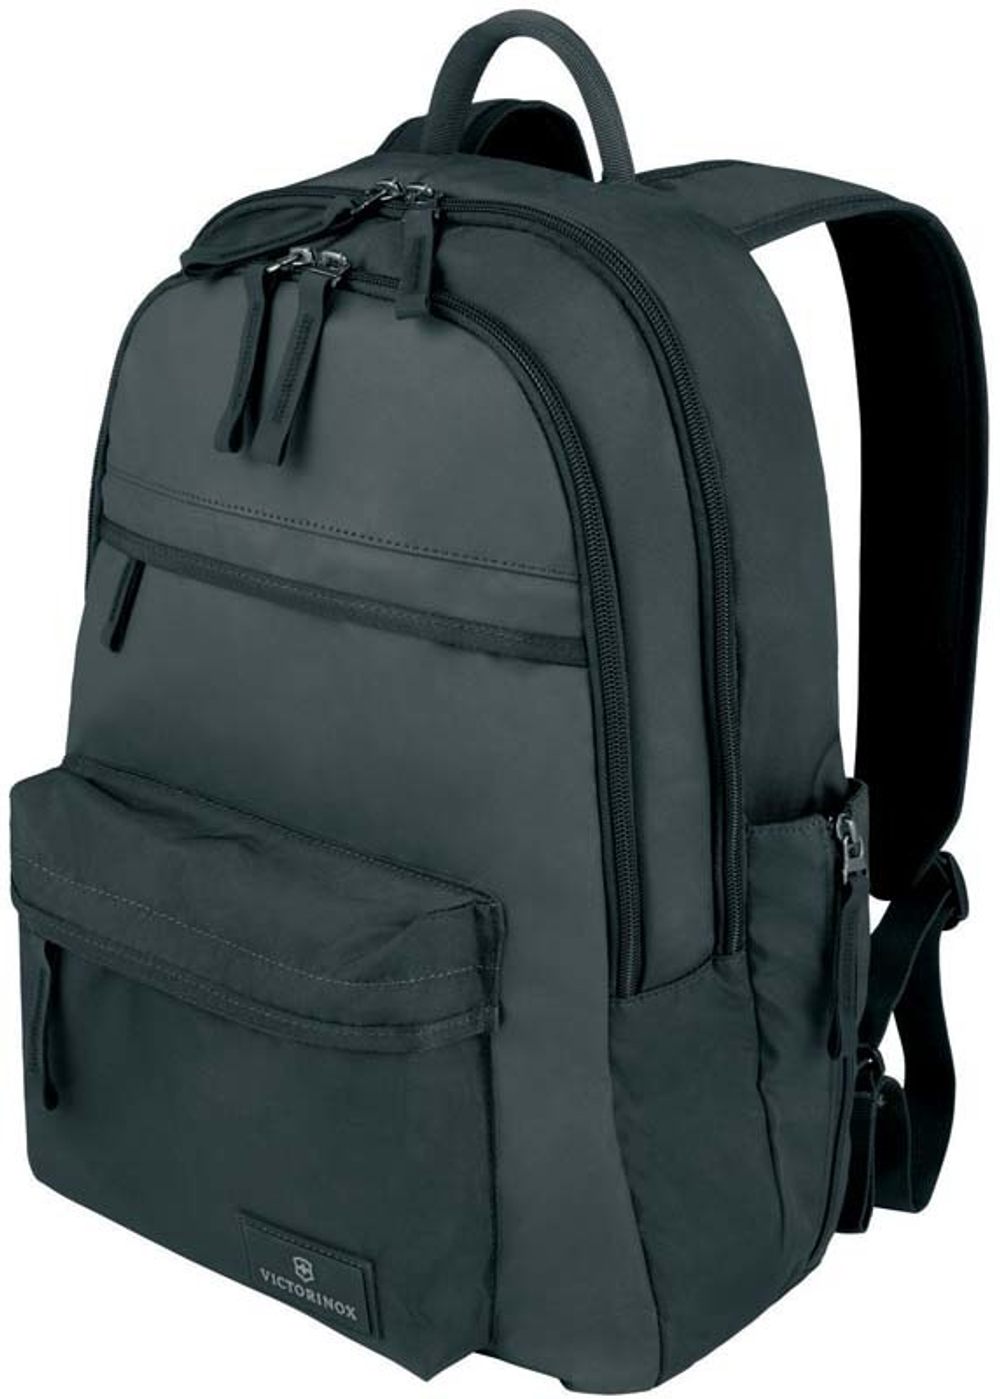 Качественный с гарантией прочный рюкзак чёрный объёмом 20 л из нейлона Versatek™ с наружным карманом для бутылки или зонтика VICTORINOX Altmont™ 3.0 Standard Backpack 32388401